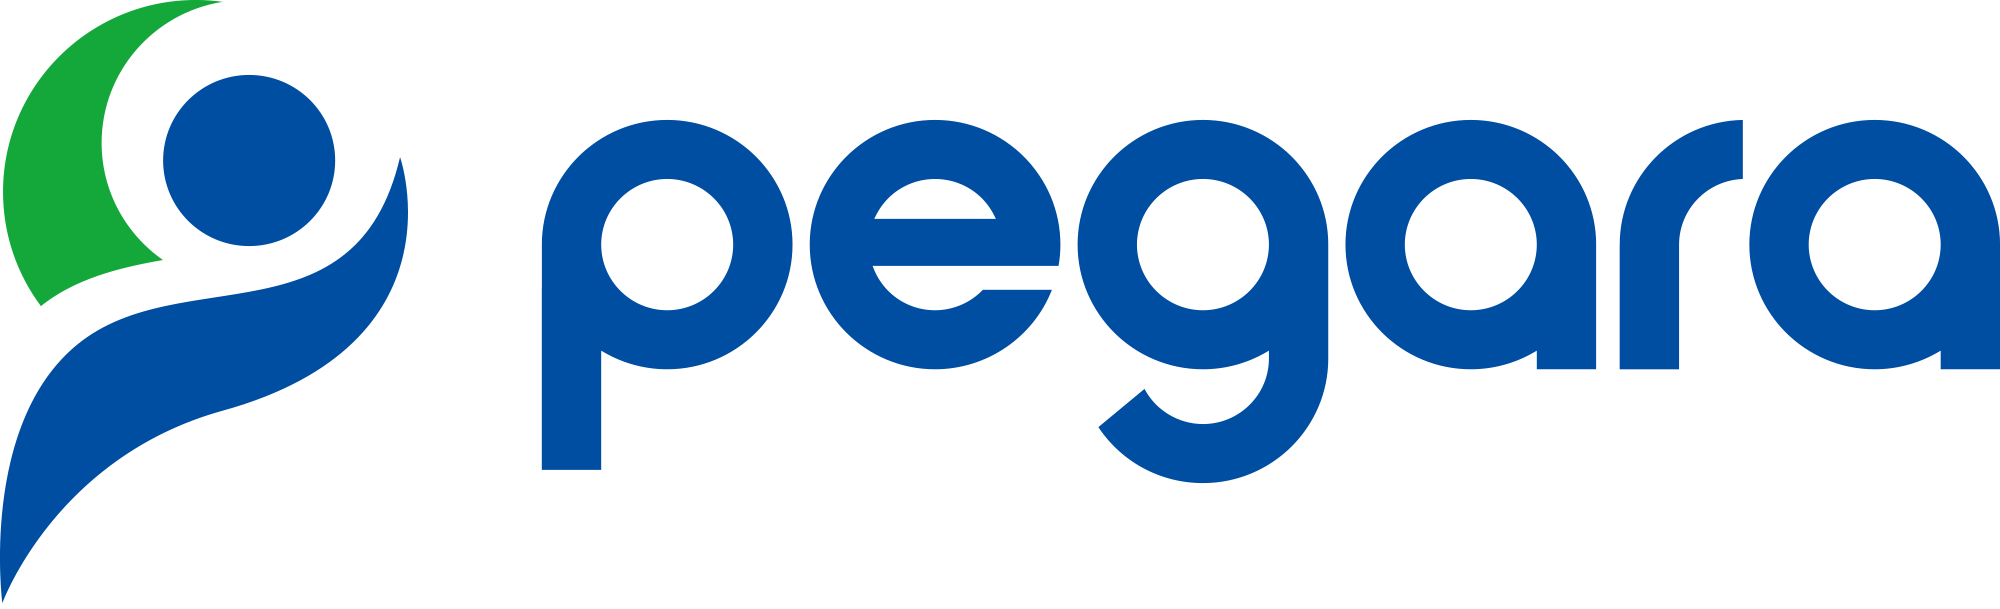 Pegara, Inc.